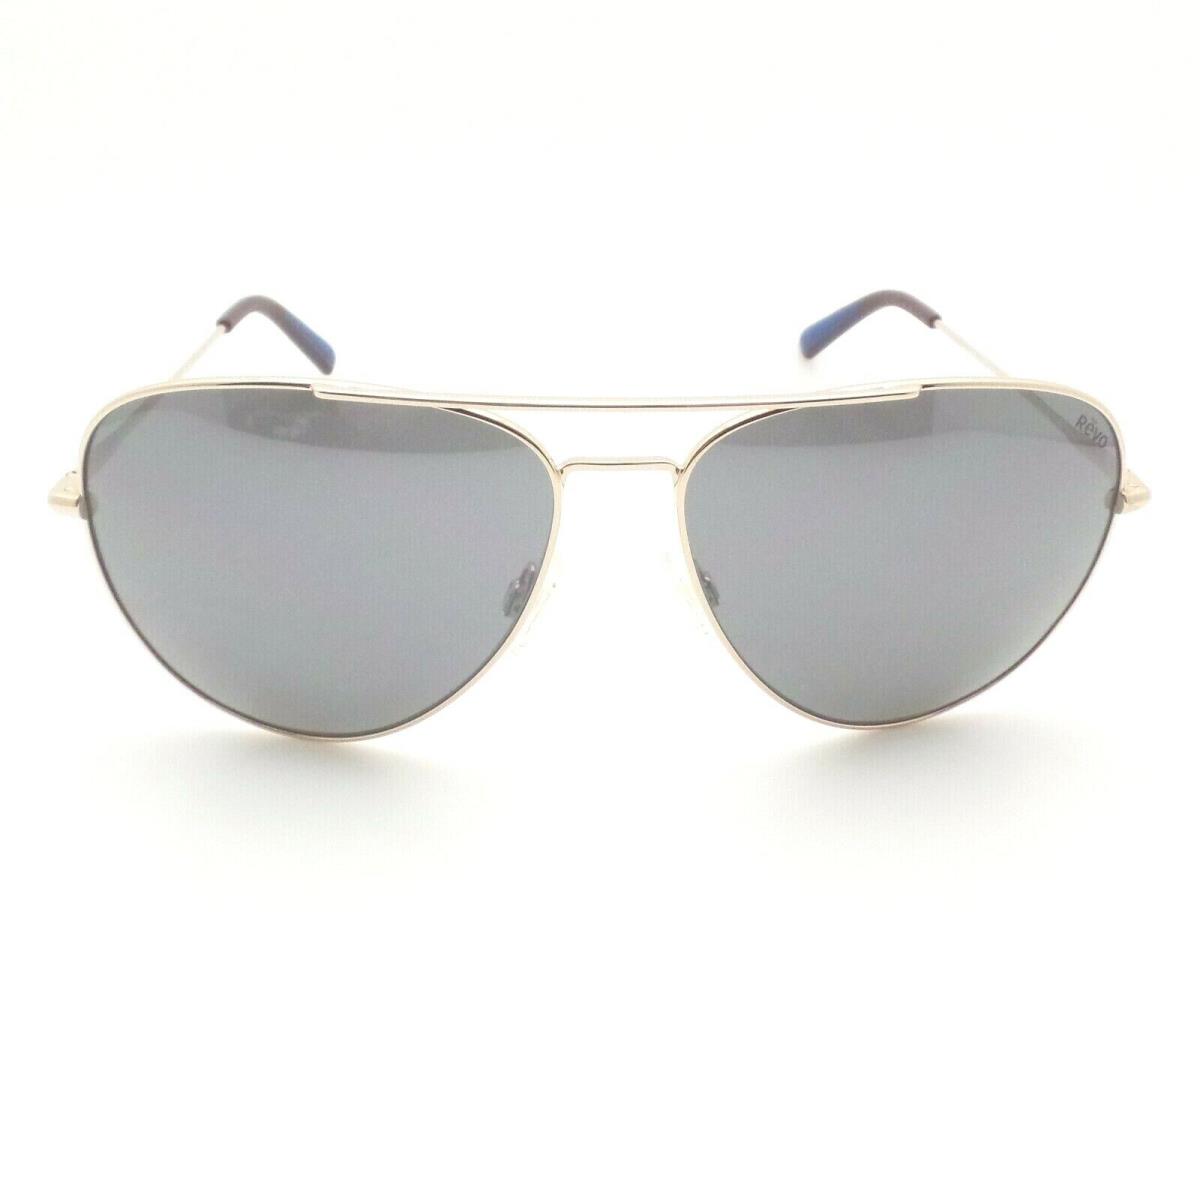 Revo sunglasses  - Shiny Gold